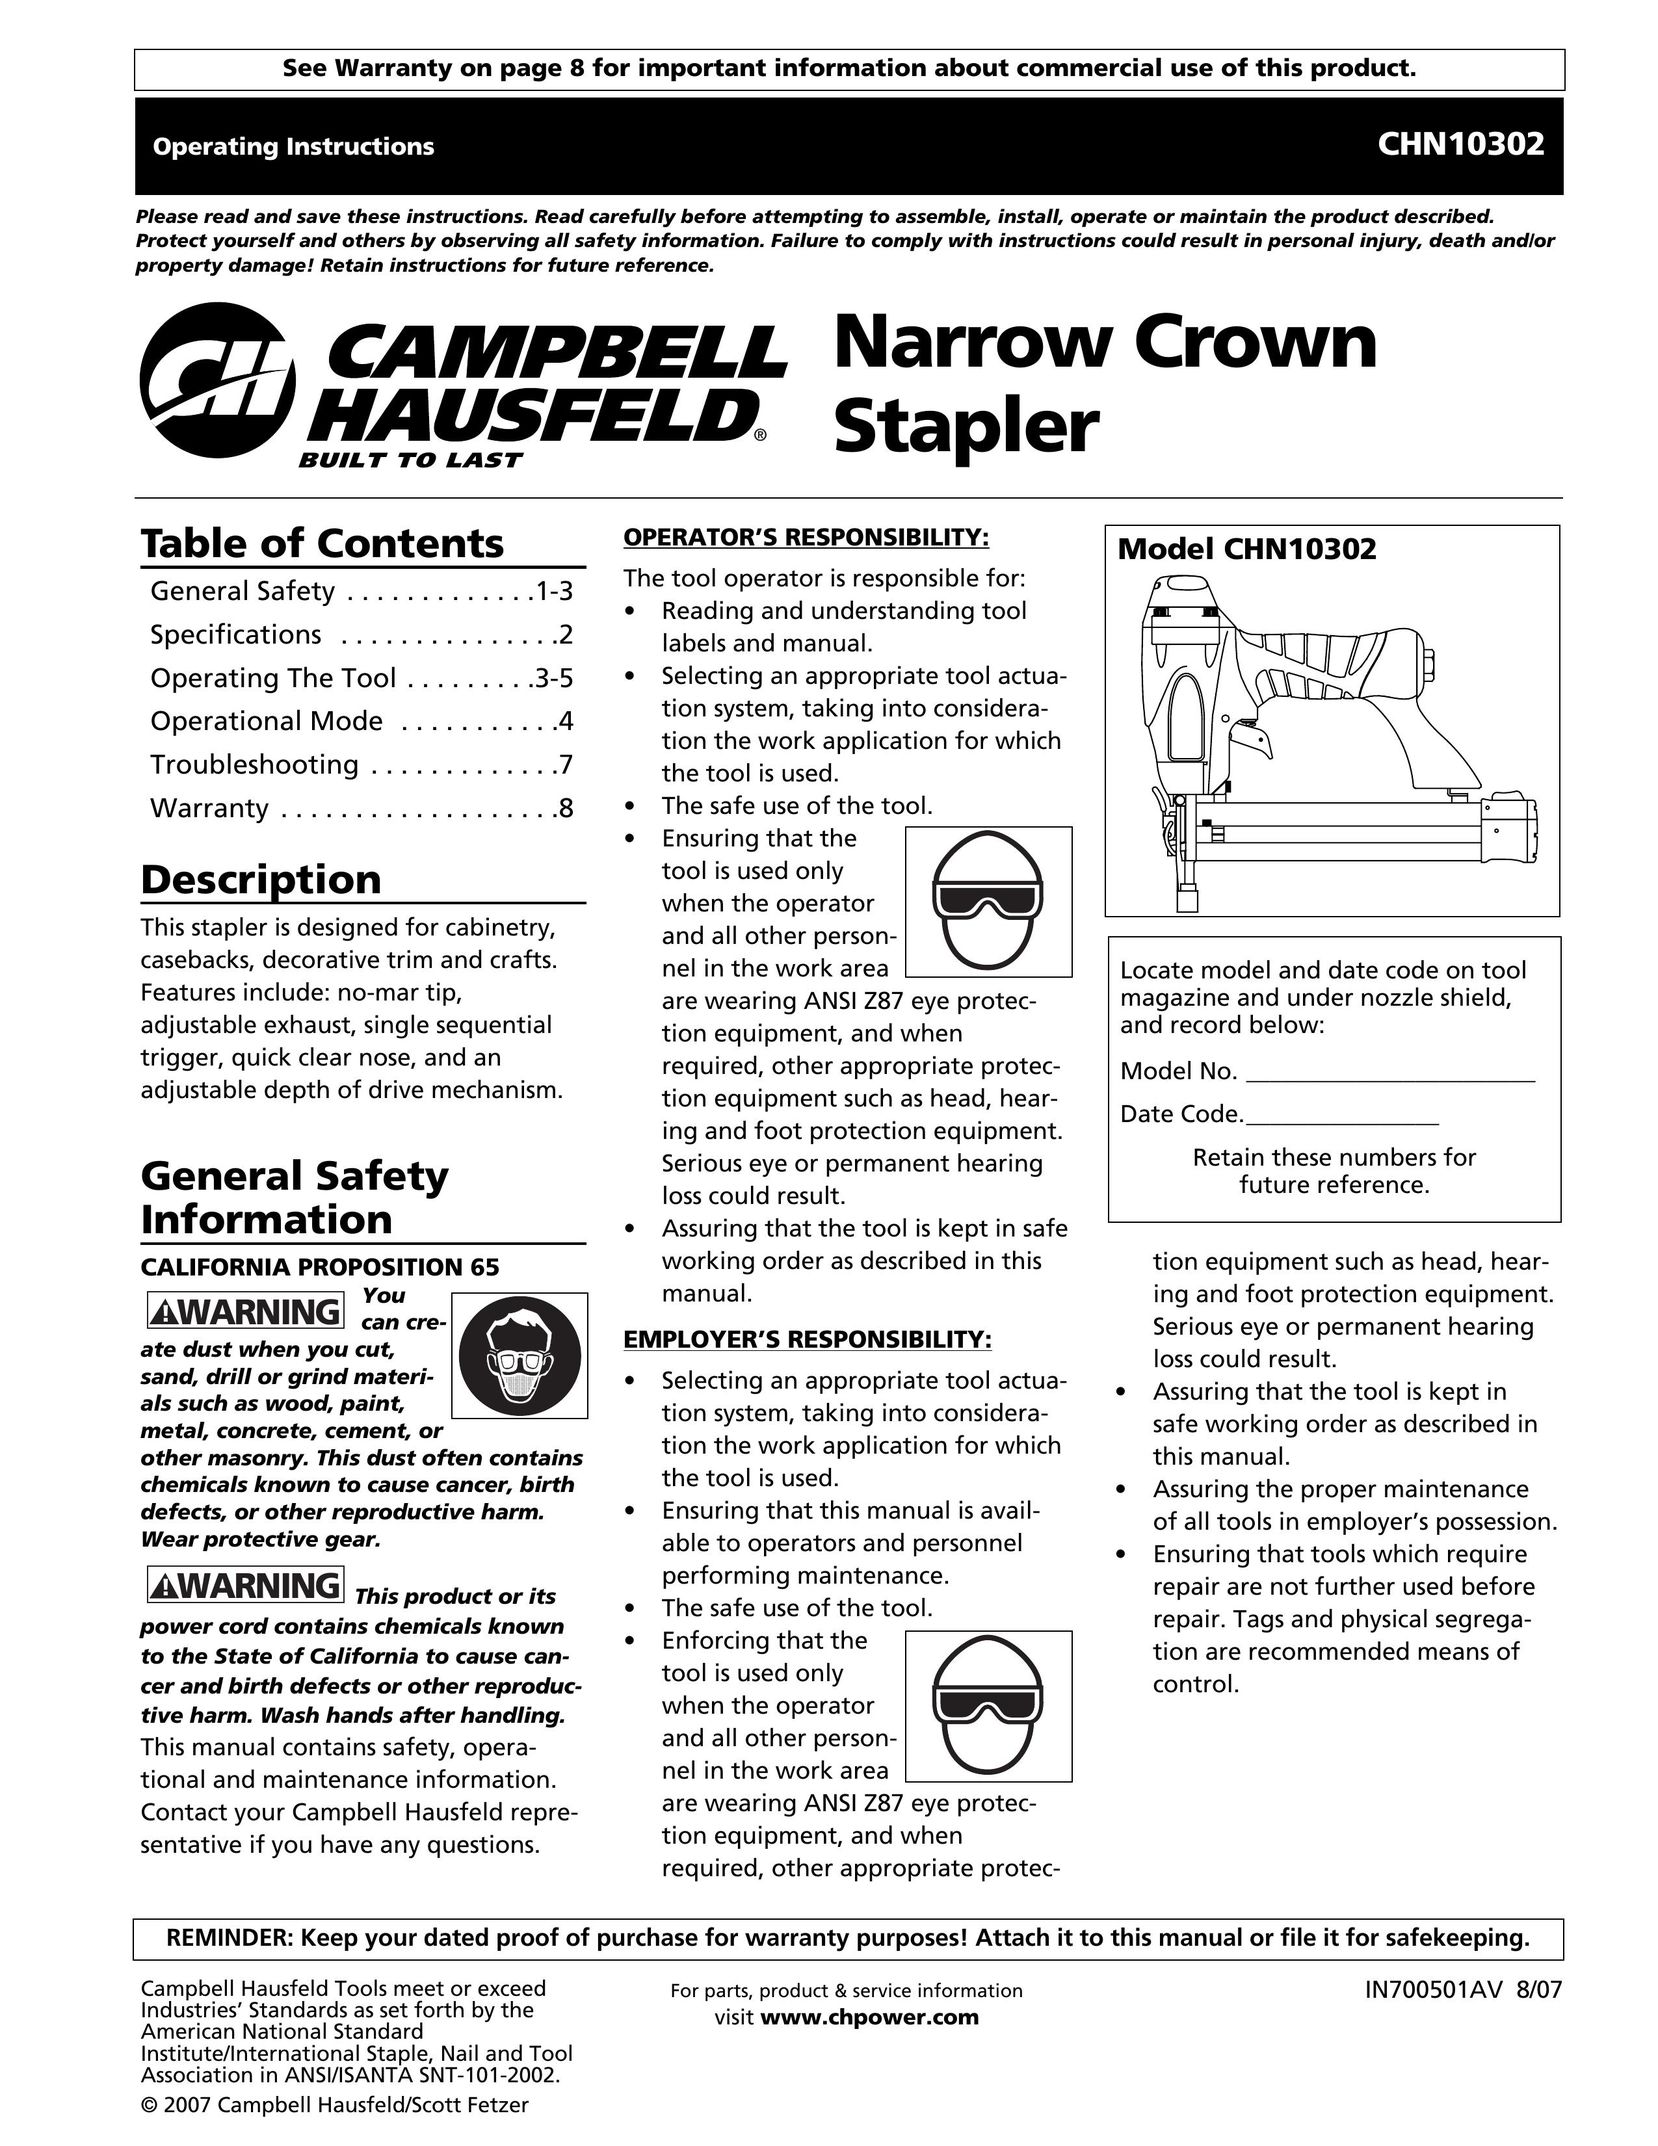 Campbell Hausfeld CHN10302 Staple Gun User Manual